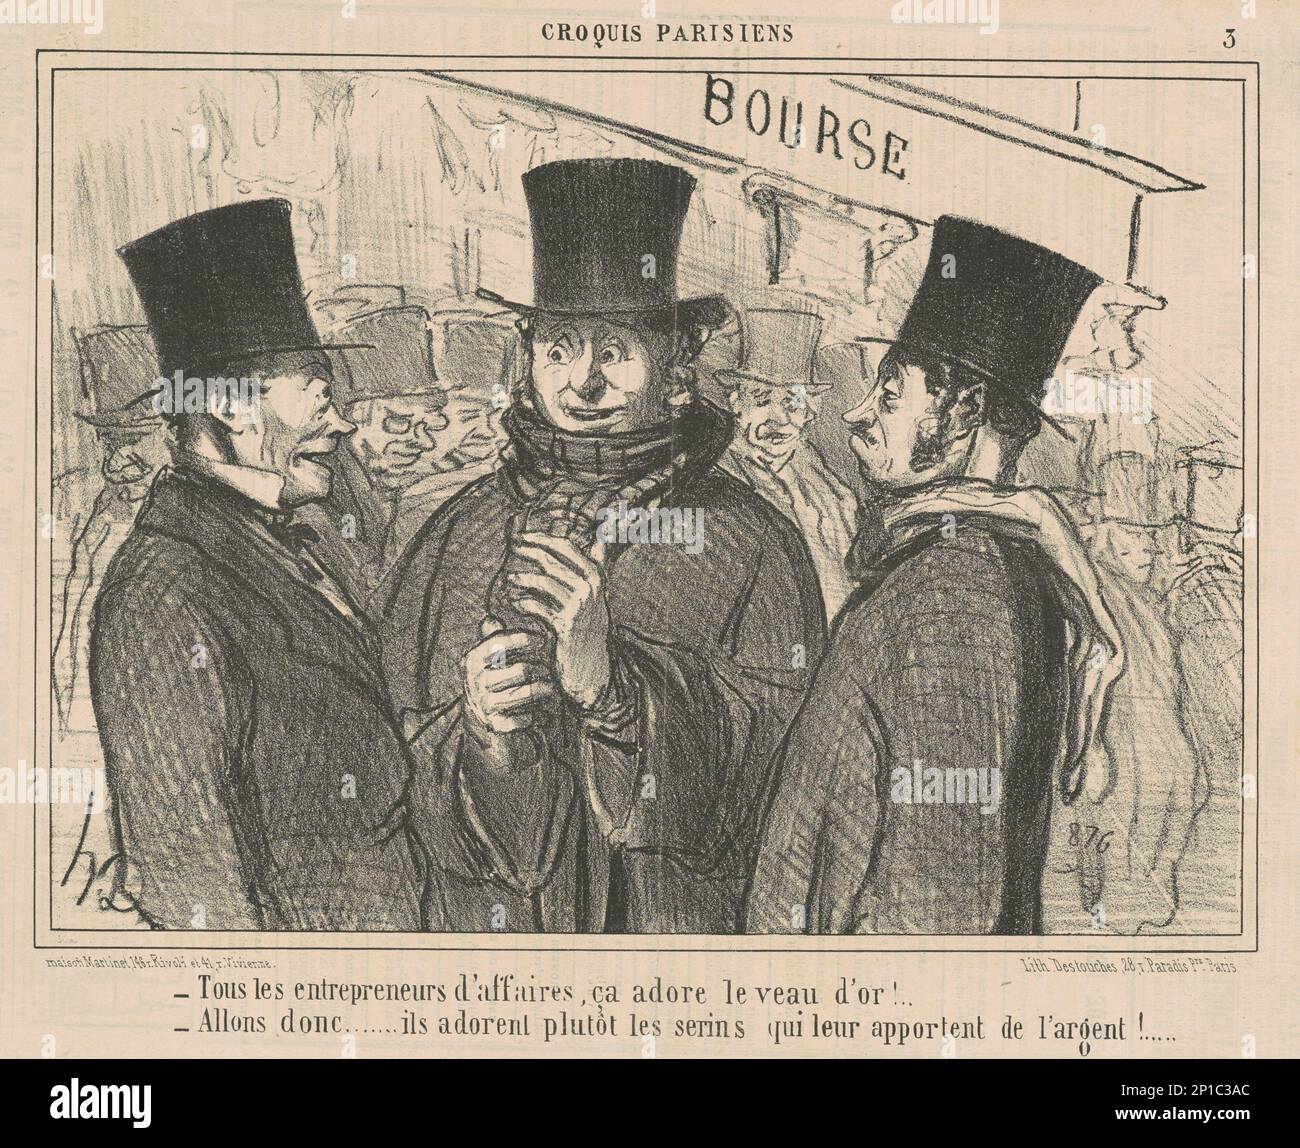 Tous les entrepreneurs d'affaires, CA adore ..., 19th Century.croquis parisiens - tous les entrepreneurs... Banque D'Images